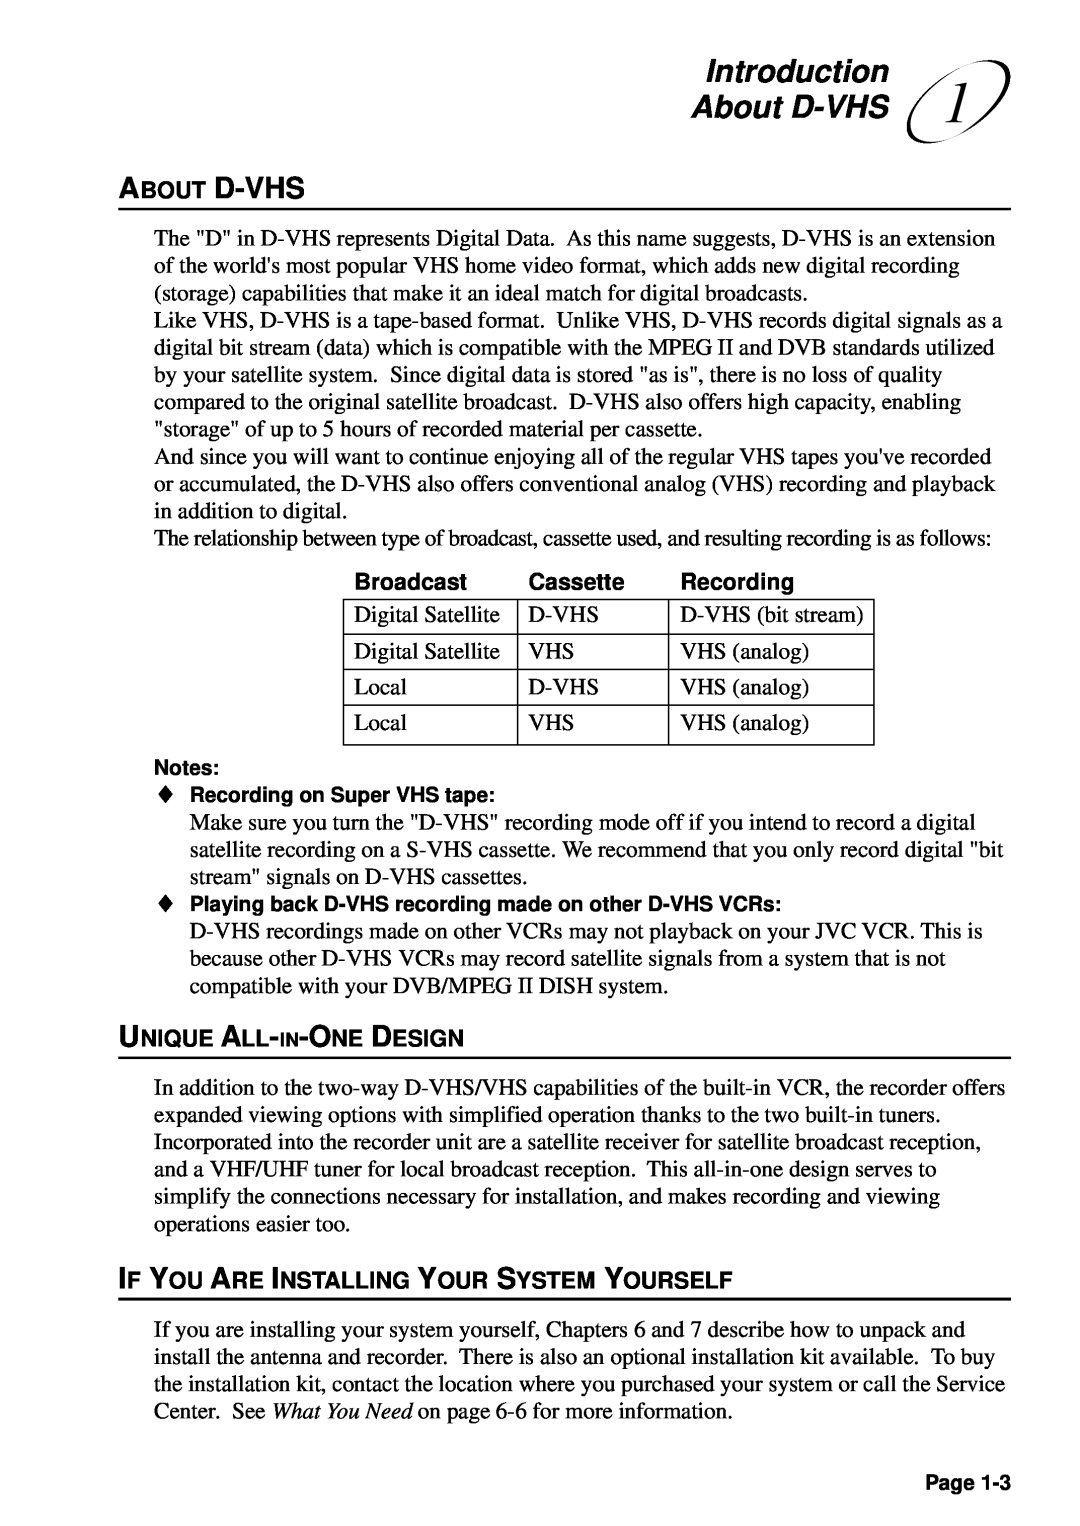 JVC HM-DSR100U, HM-DSR100DU, HM-DSR100RU manual Introduction, About D-VHS, About D-Vhs 